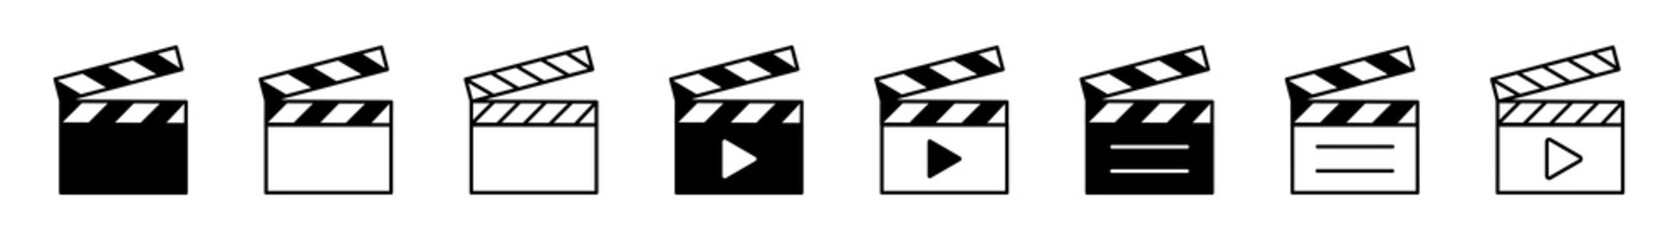 Clapper board vector icon set. Open movie clapboard icon